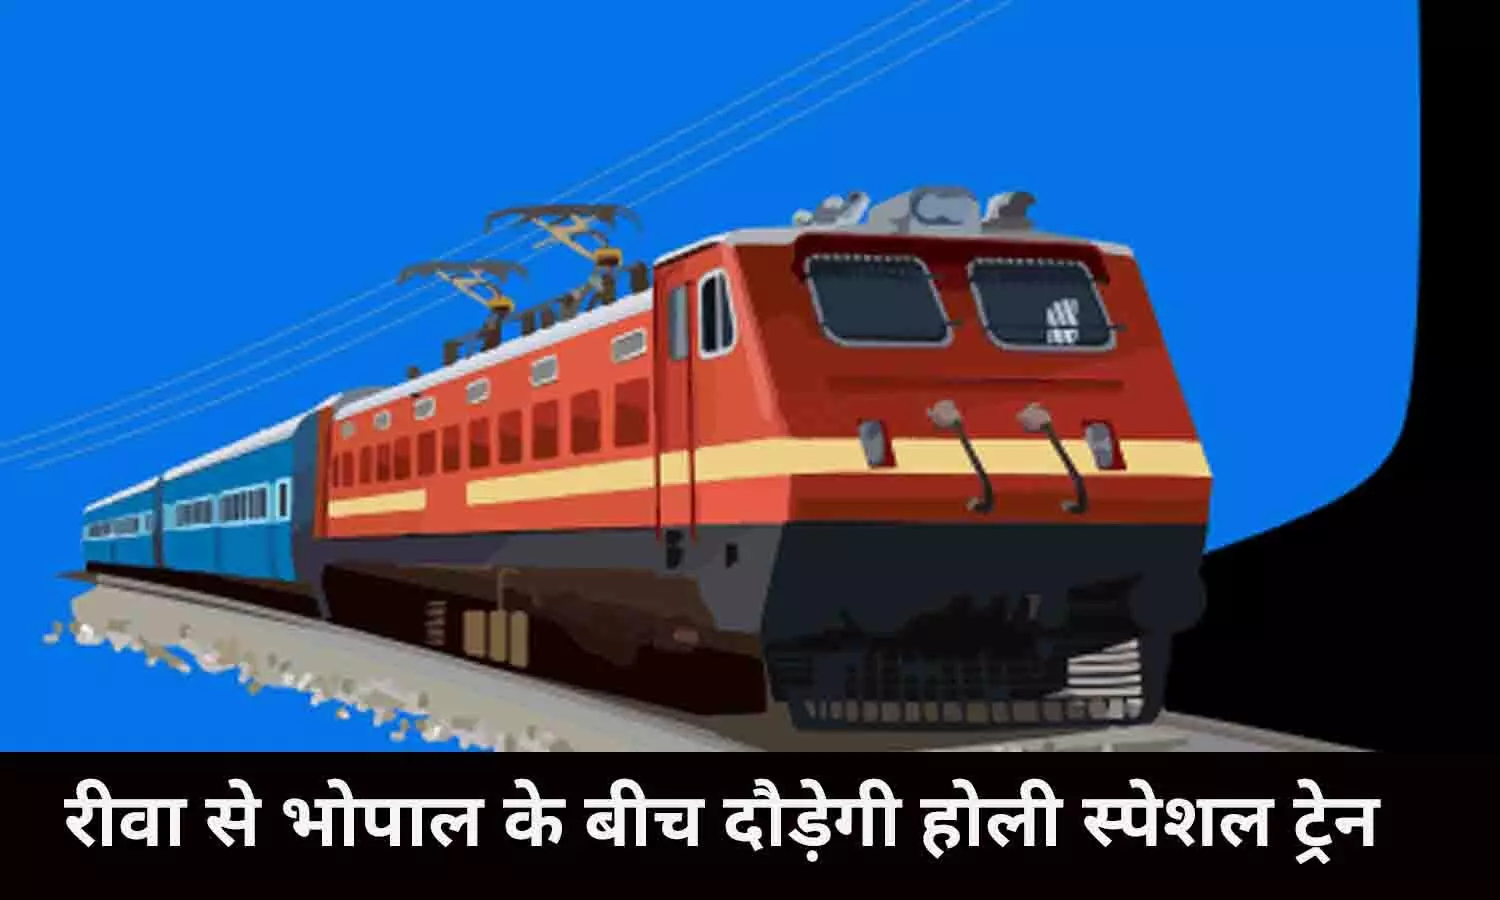 Rewa-Bhopal Holi Special Train: गुड न्यूज़! रीवा से भोपाल के बीच दौड़ेगी होली स्पेशल ट्रेन